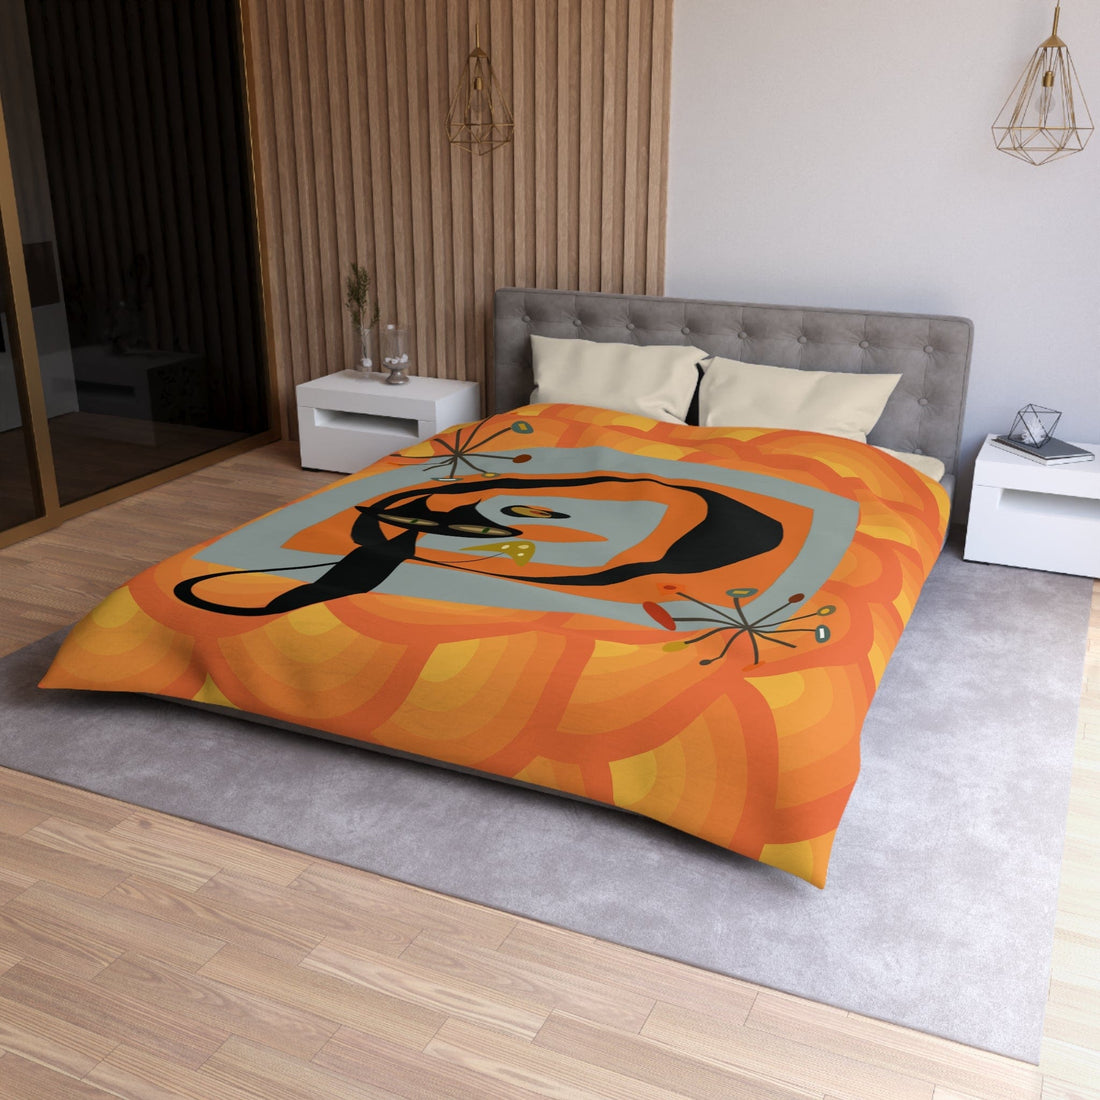 Atomic Cat, Groovy Retro Orange, Mid Mod Duvet Cover Home Decor Queen / Cream